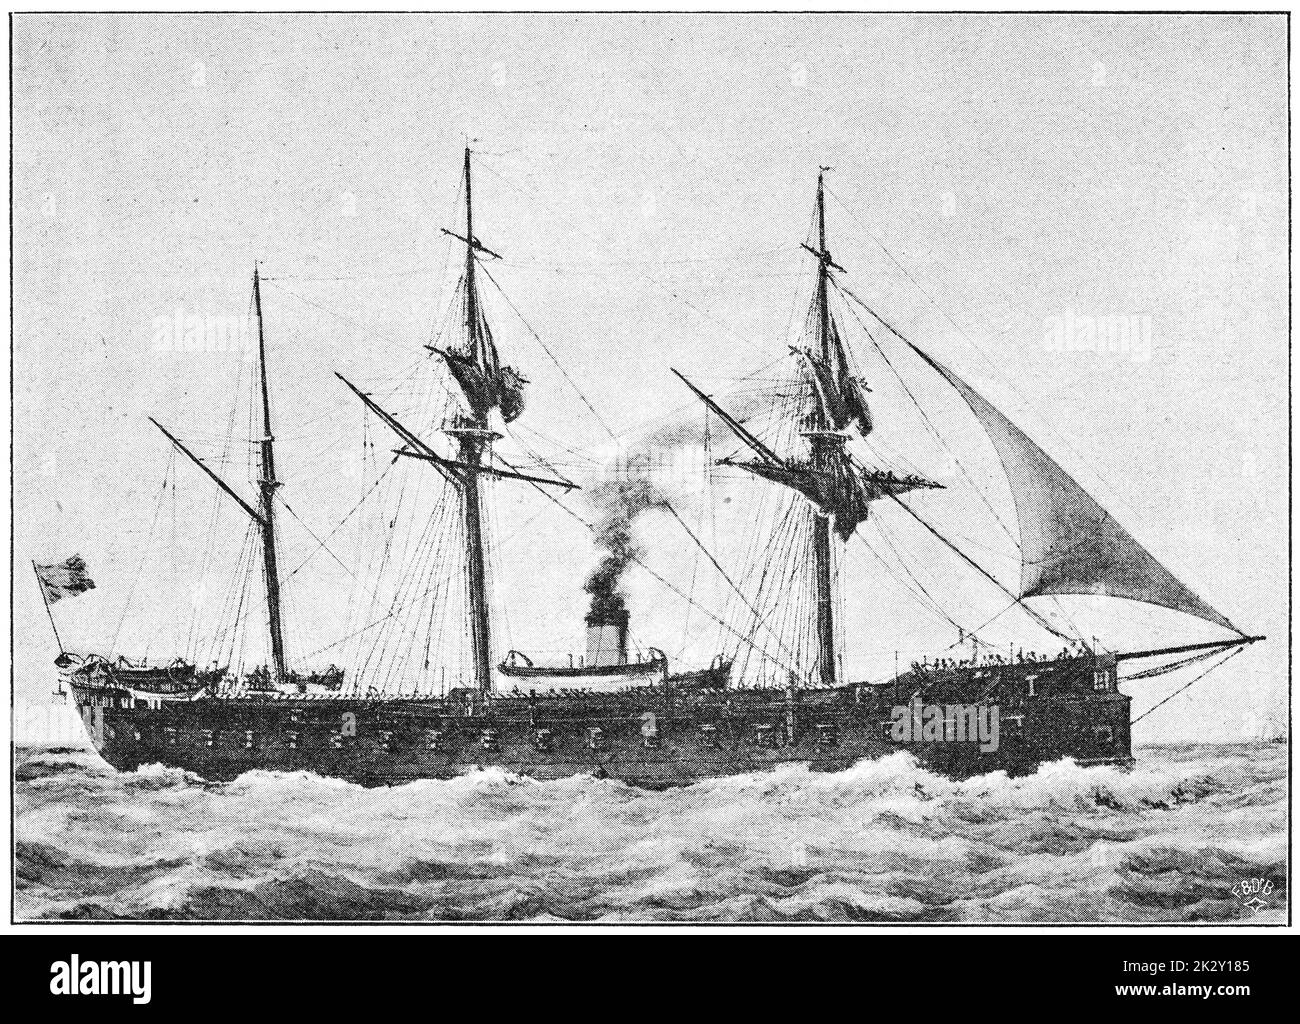 Il francese Gloire (Glory) - il primo ironclad oceanico, lanciato nel 1859. Illustrazione del 19 ° secolo. Germania. Sfondo bianco. Foto Stock